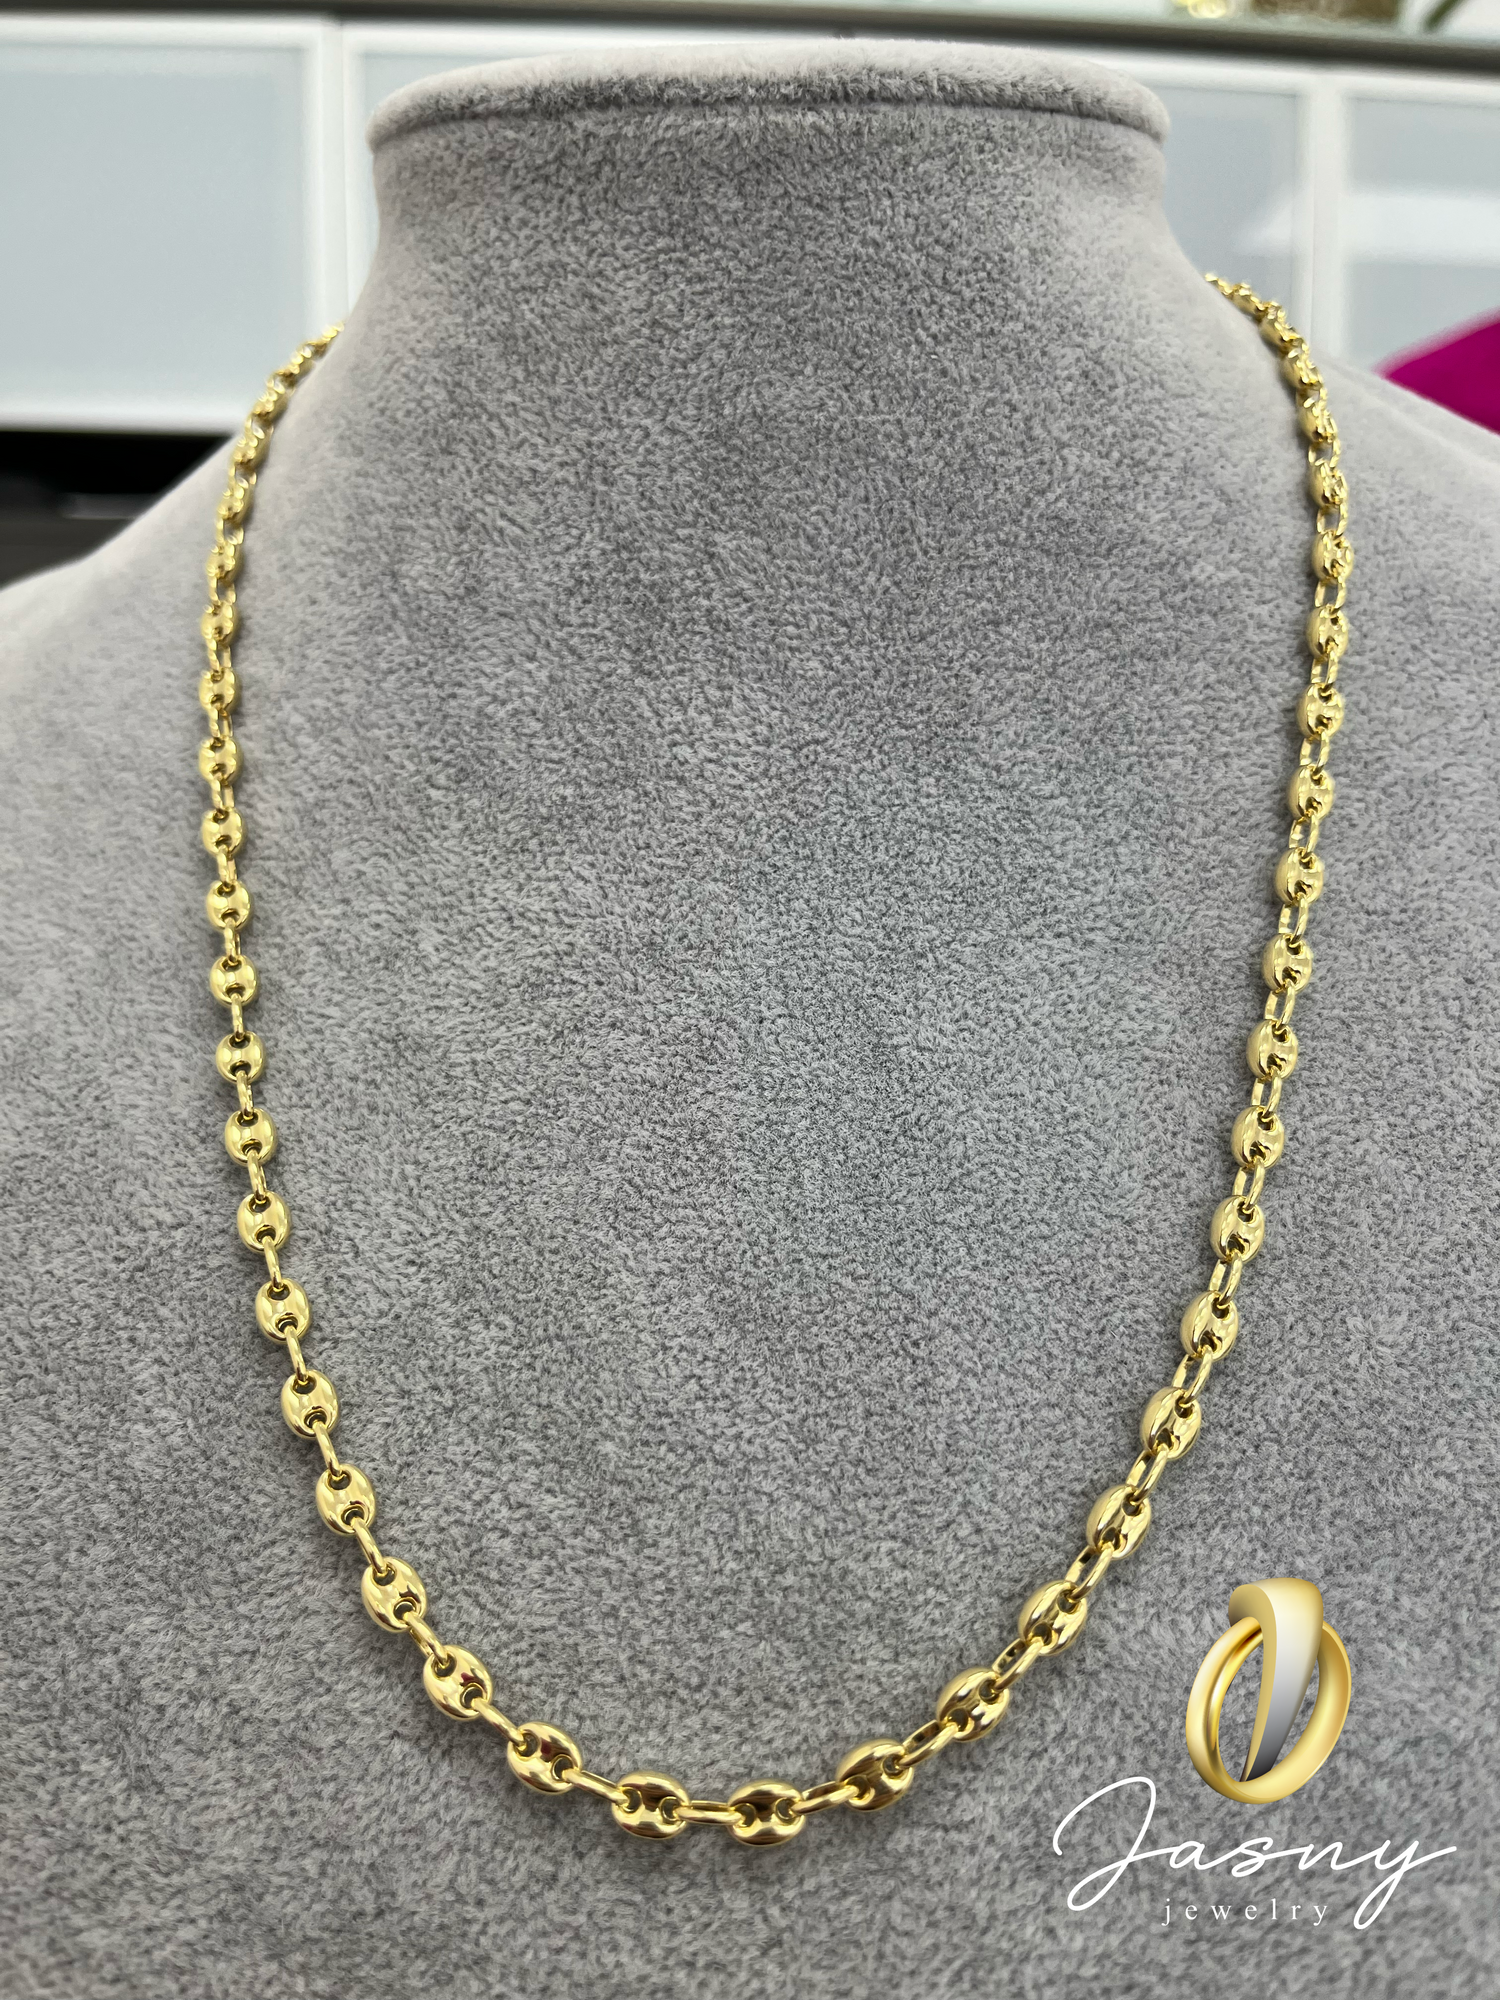 CADENA GUCCI ORO 14K / GUCCI CHAIN – Jasny Jewelry